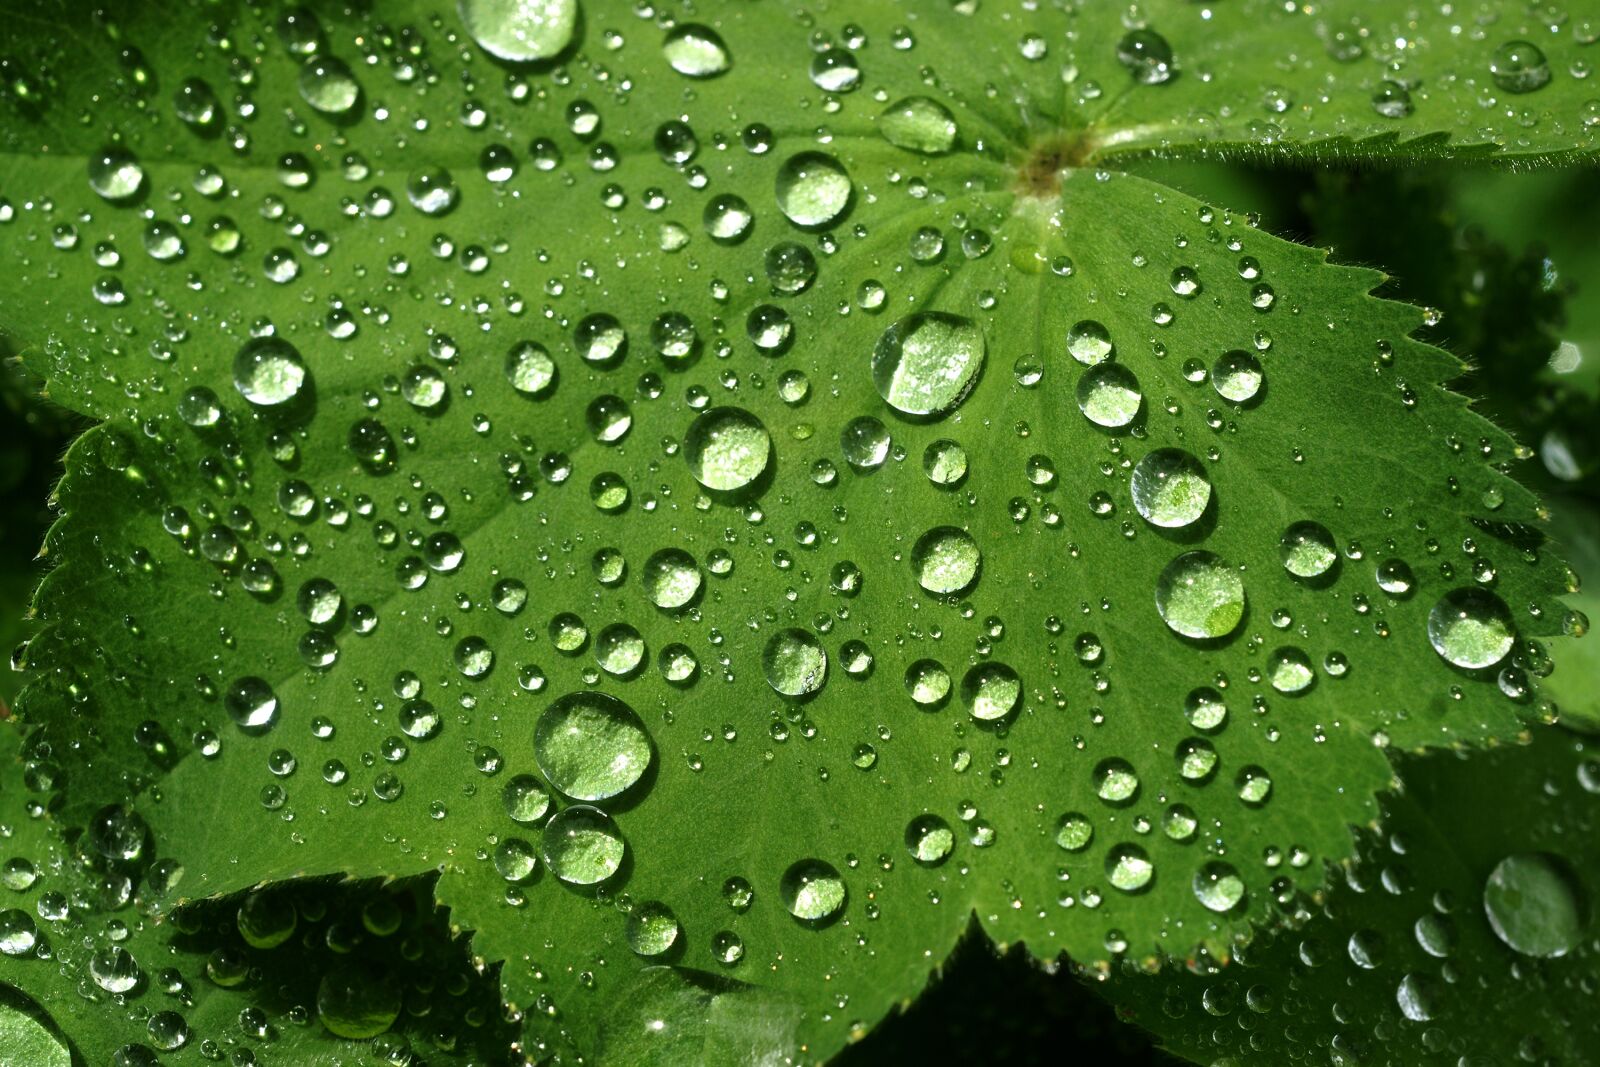 Sony Alpha DSLR-A700 sample photo. Leaf, rain, dew photography